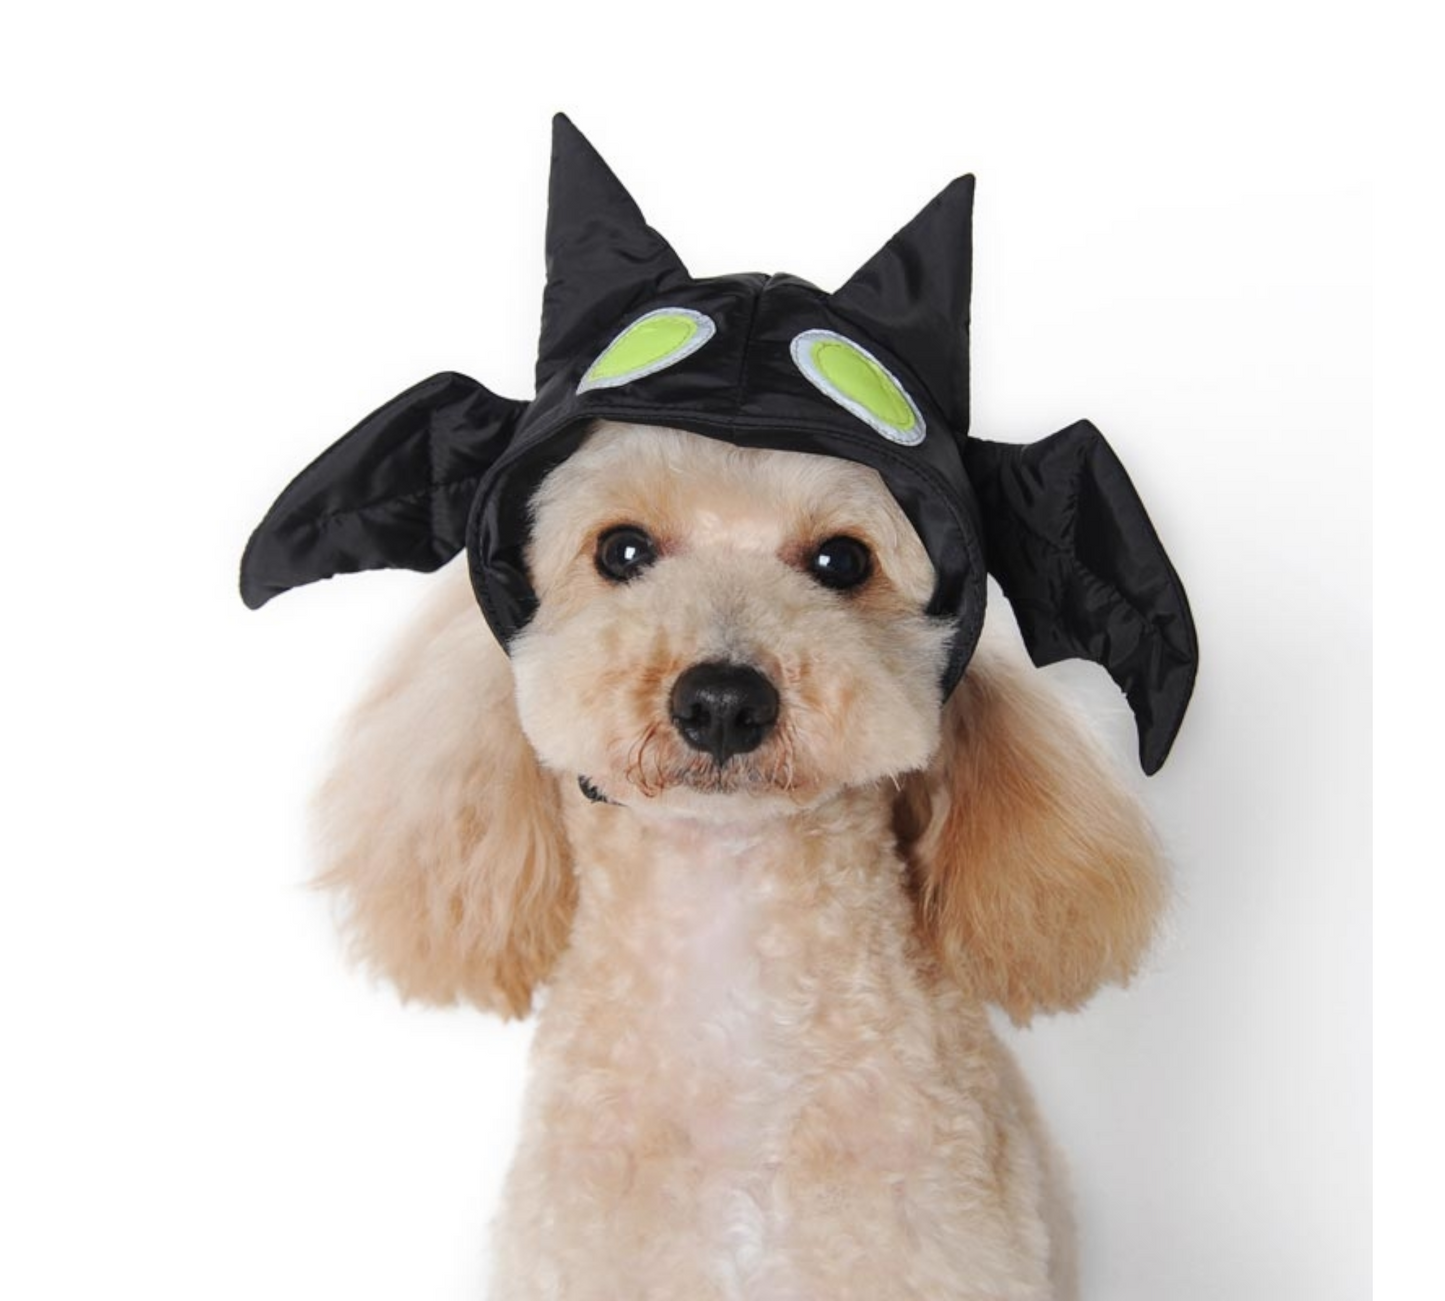 Canine's World Dog Hat Bat Hat Dogo® Pet Fashions